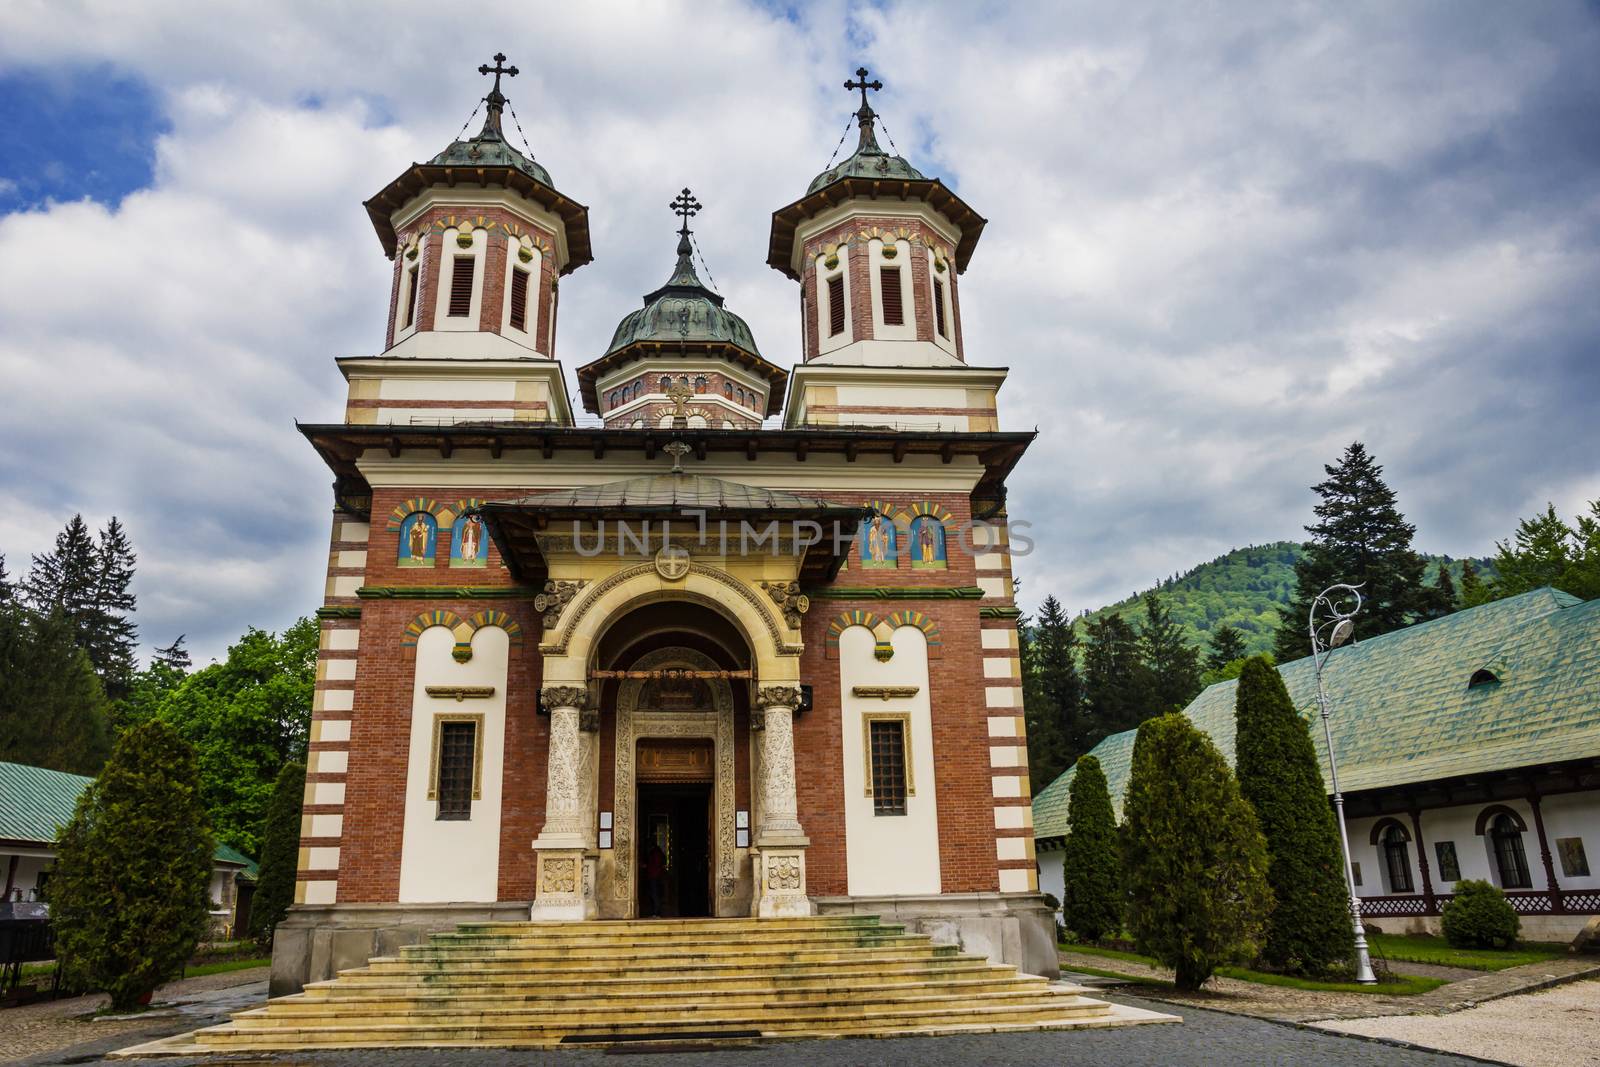 Romanian Sinaia monastery, Sinaia - Romania